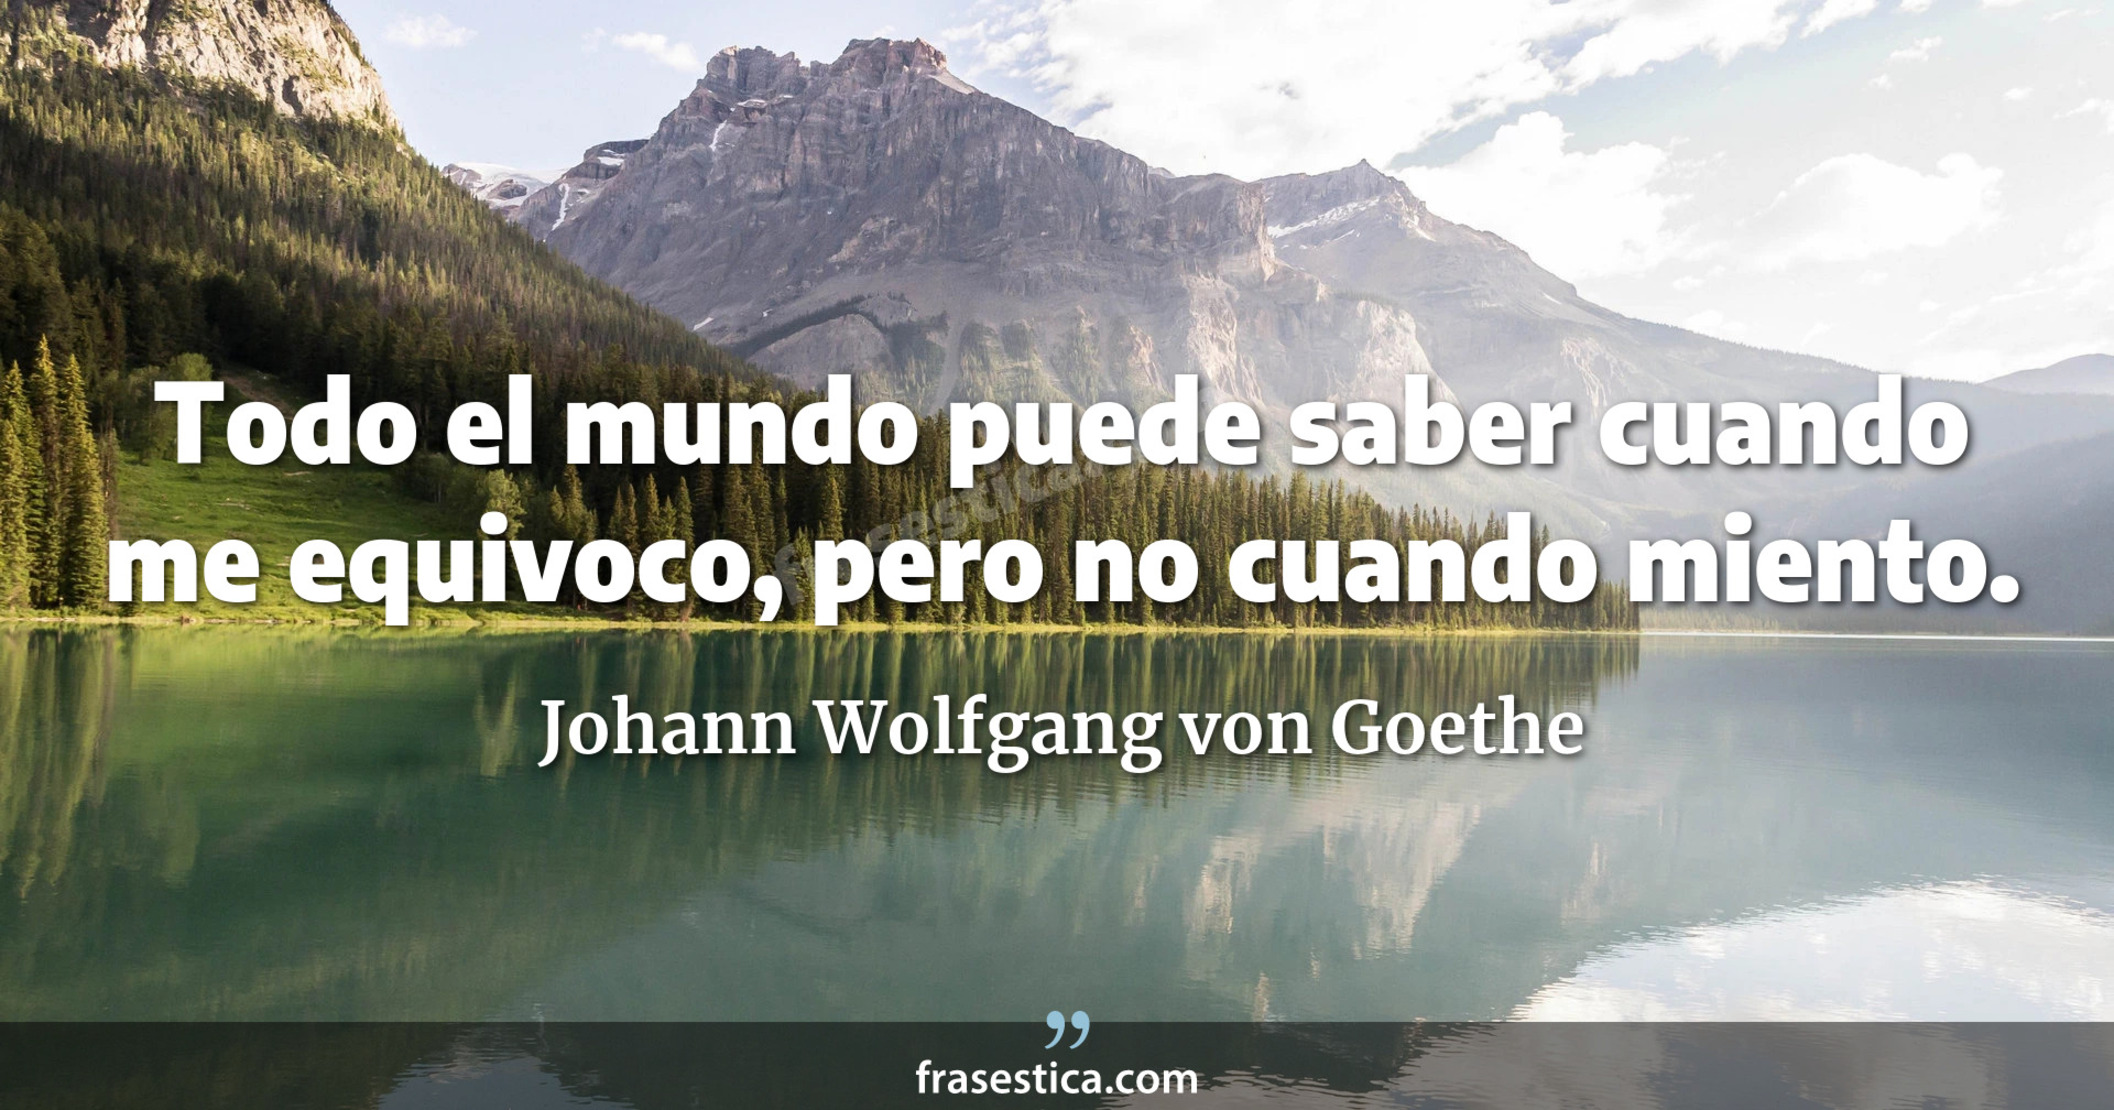 Todo el mundo puede saber cuando me equivoco, pero no cuando miento. - Johann Wolfgang von Goethe